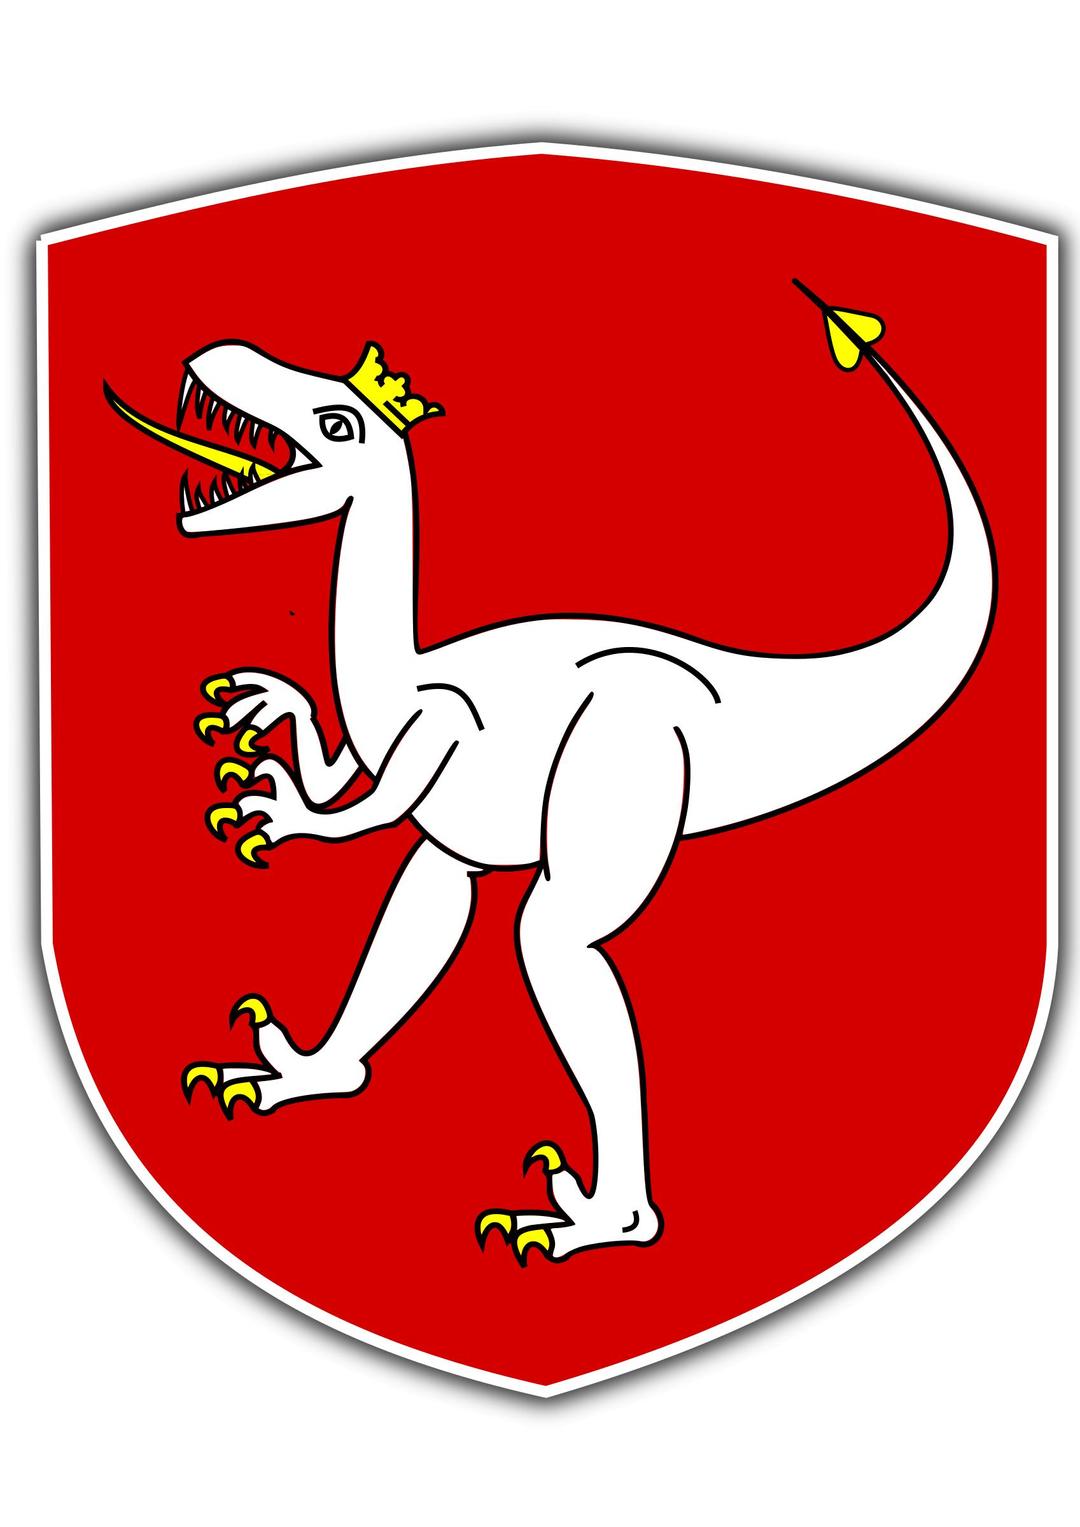 Czech Dino png transparent